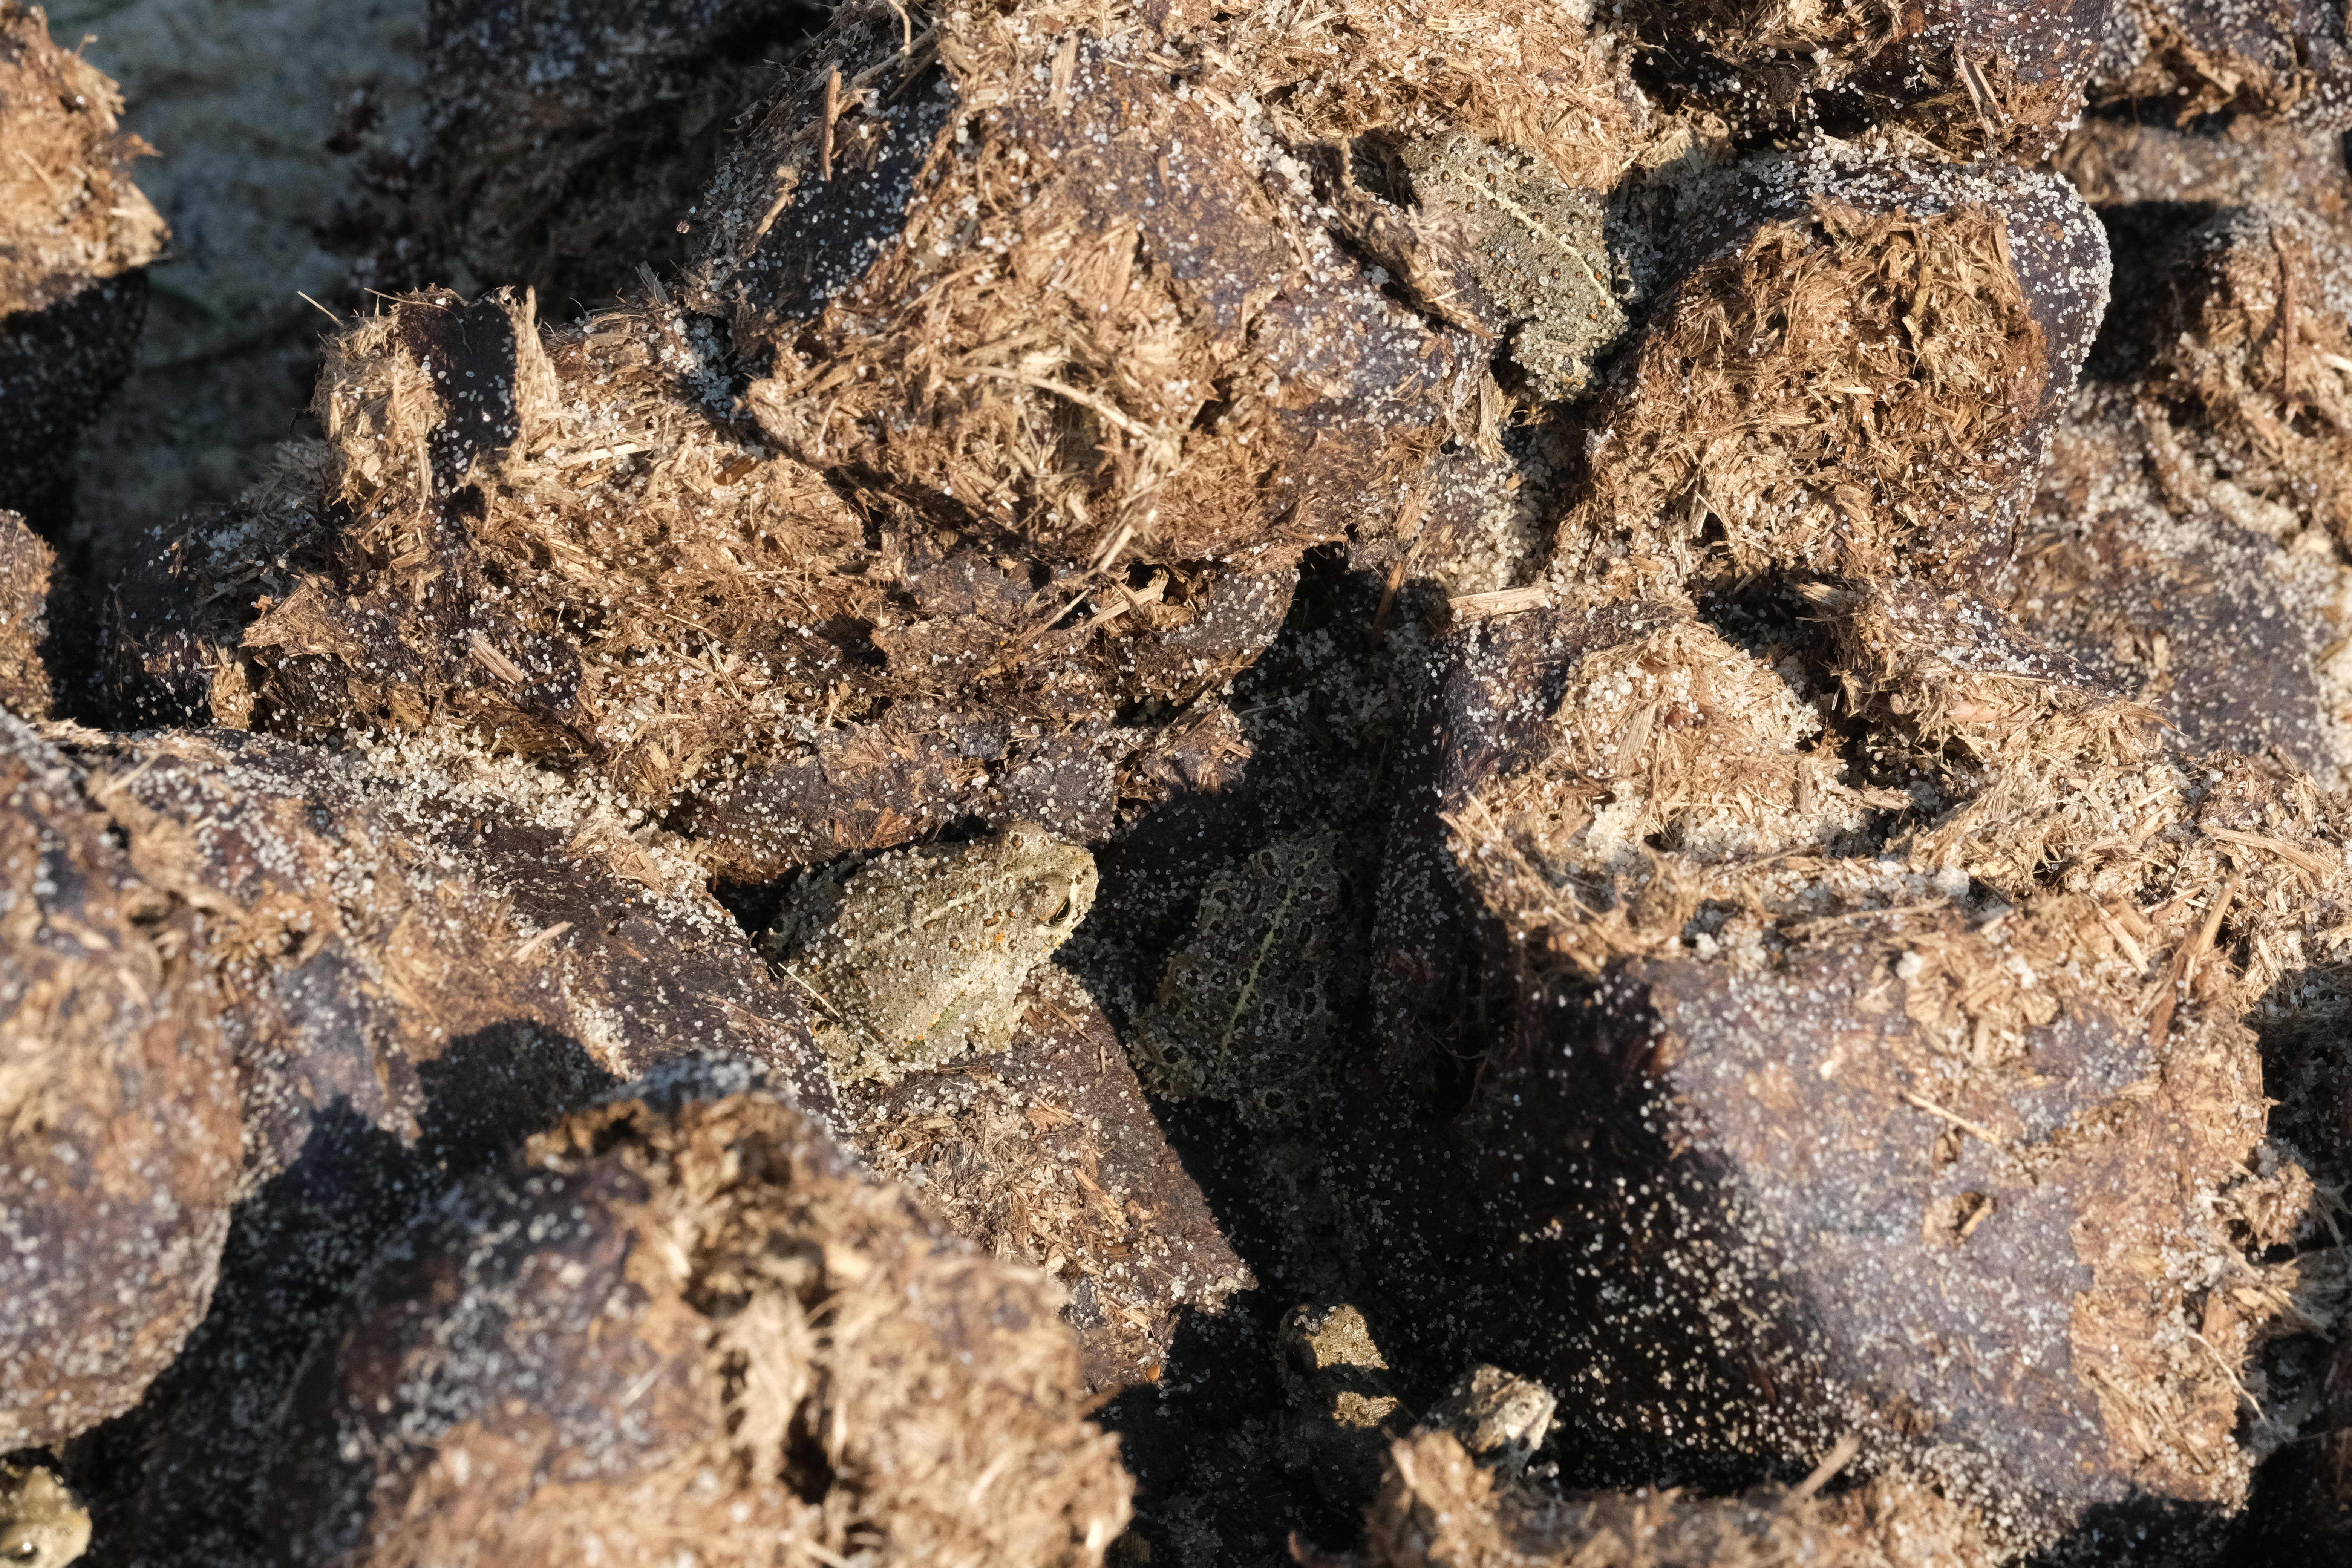 Rugstreeppadden op mest van konikpaarden.